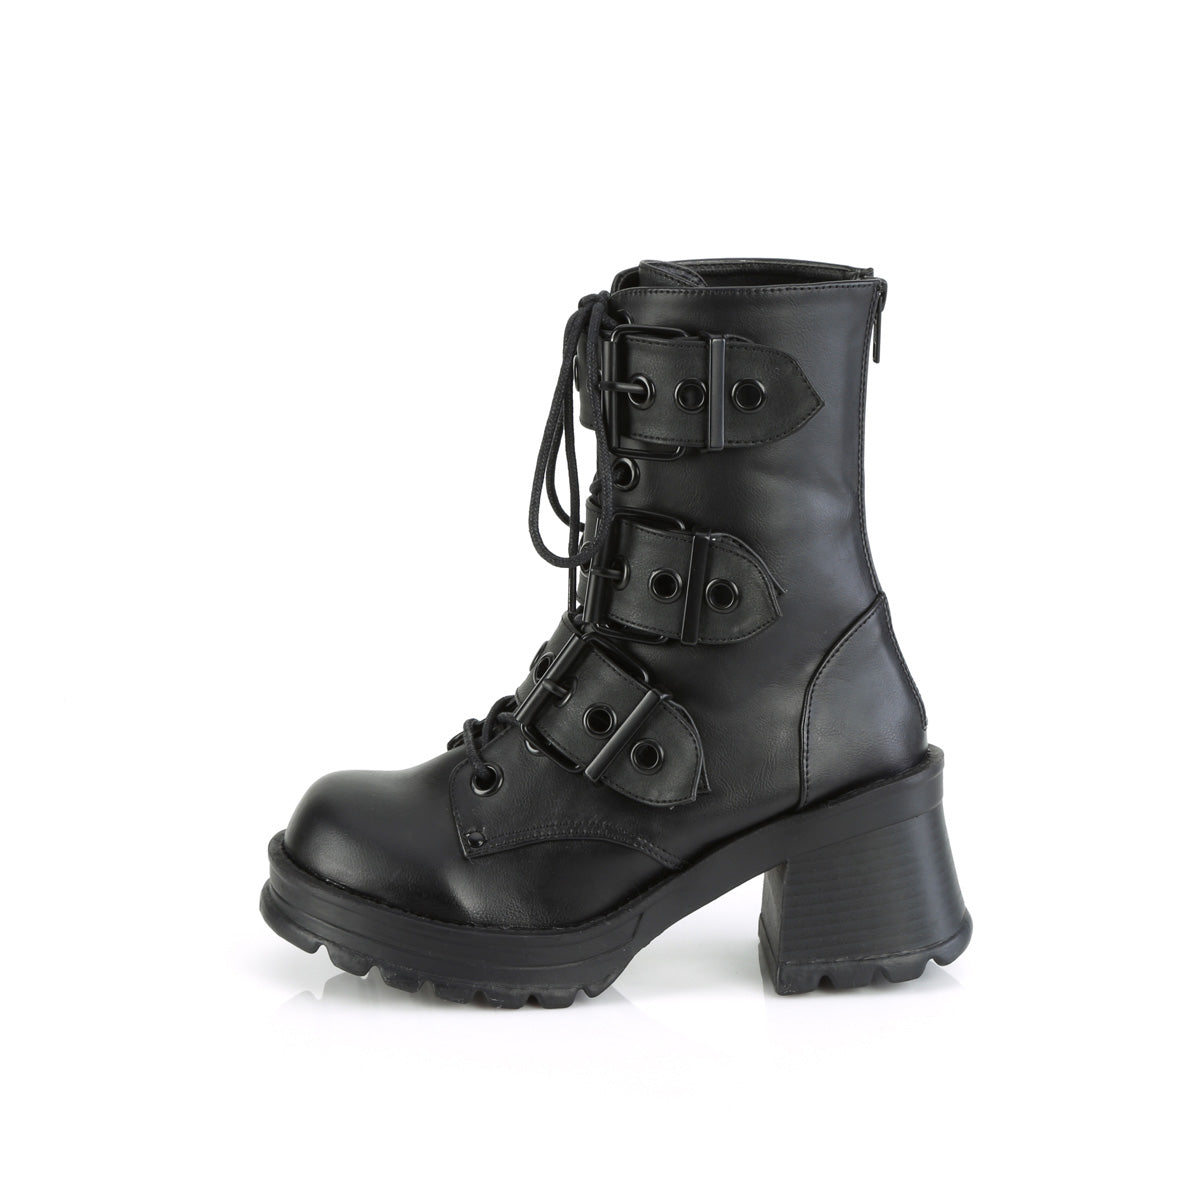 BRATTY-118 Demoniacult Alternative Footwear Women's Ankle Boots